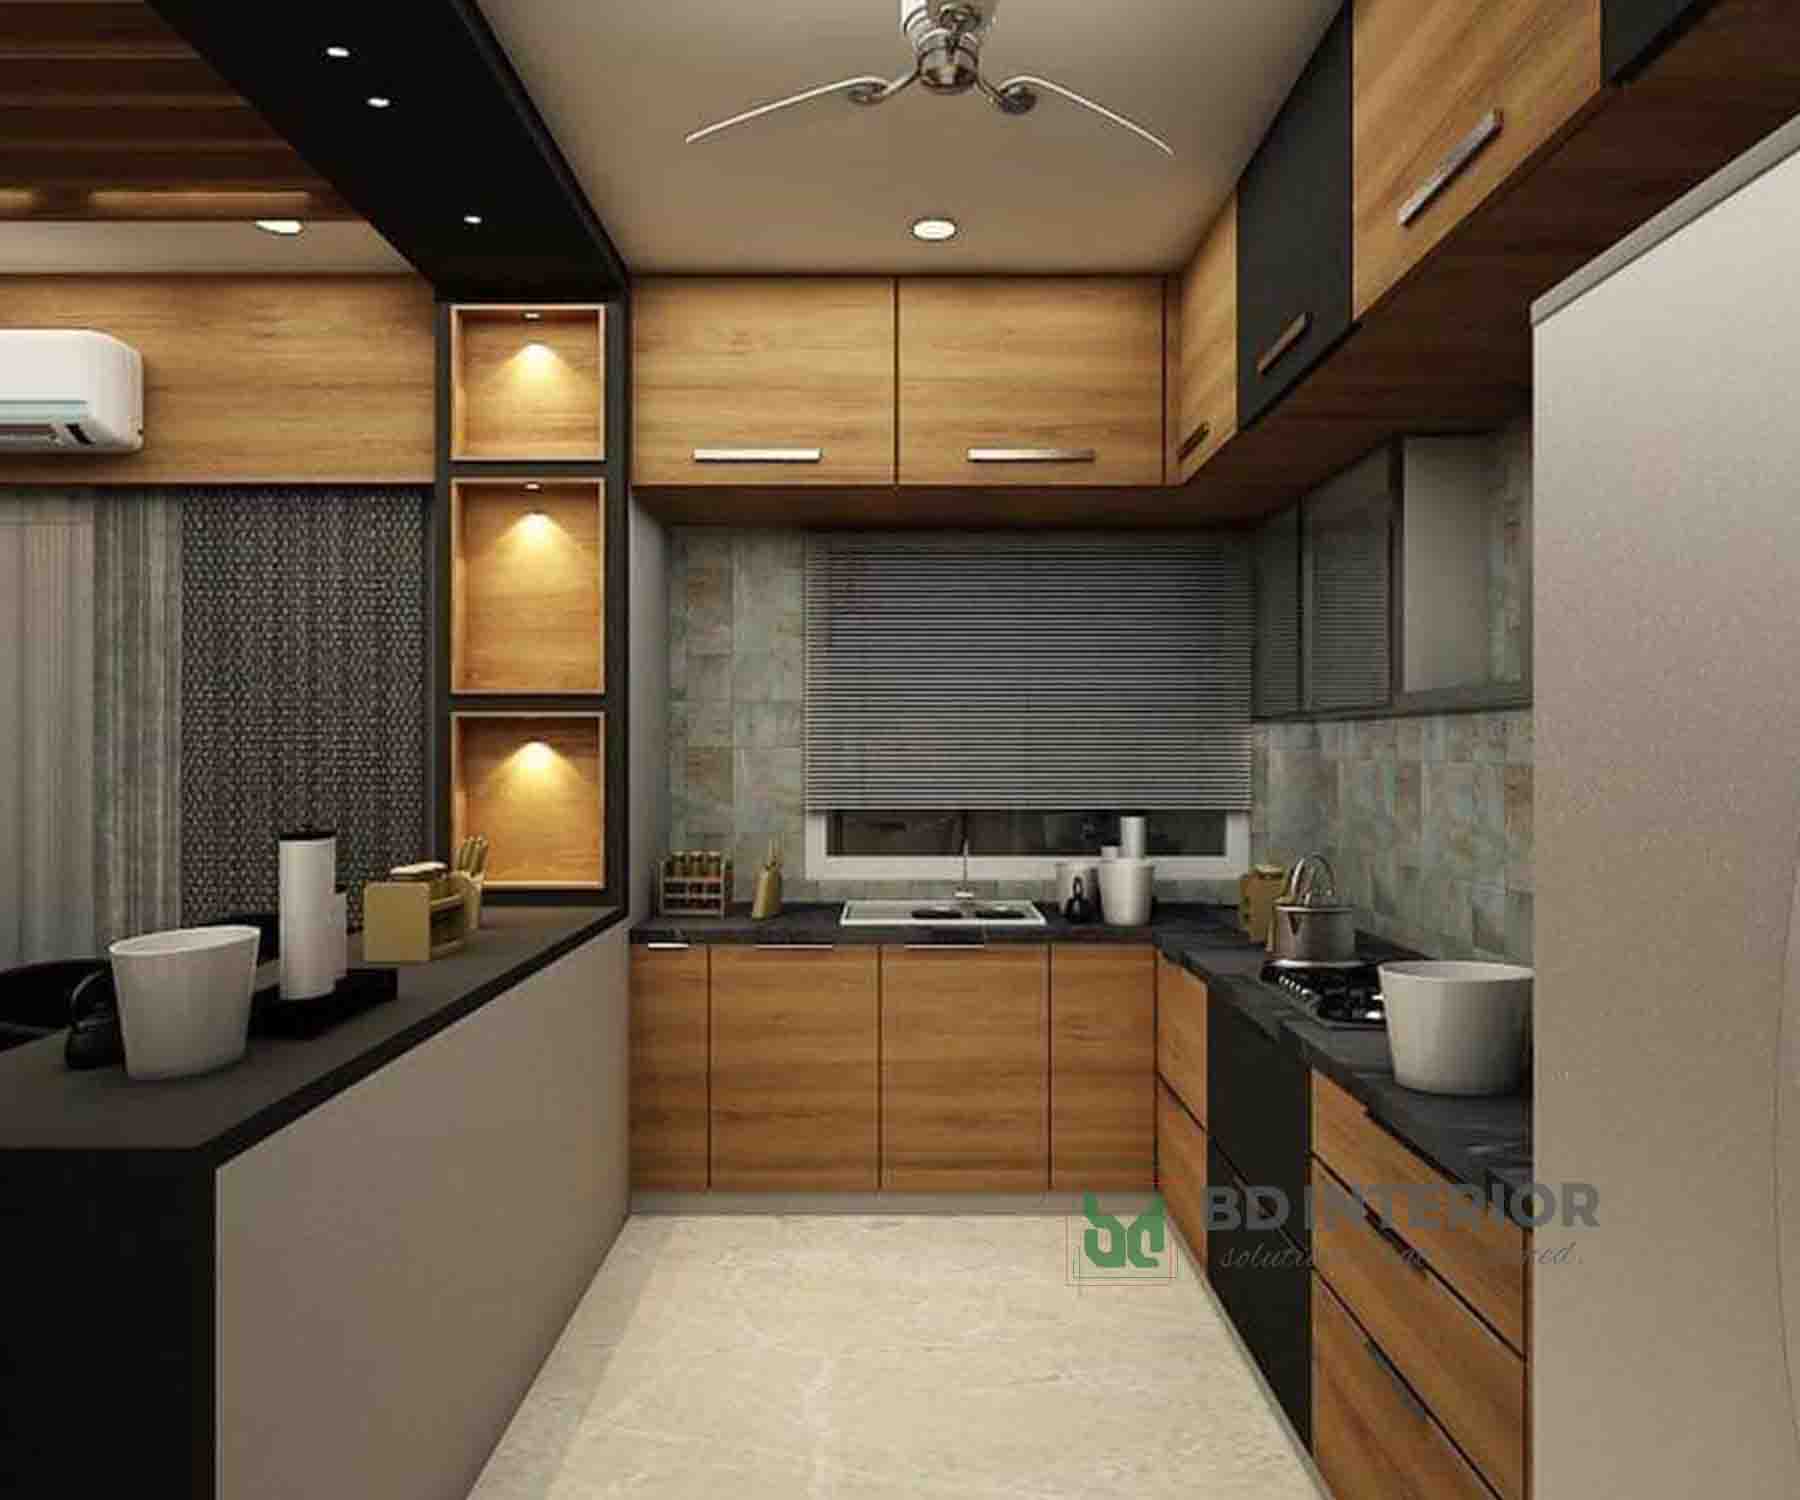 kitchen interior design in bangladesh